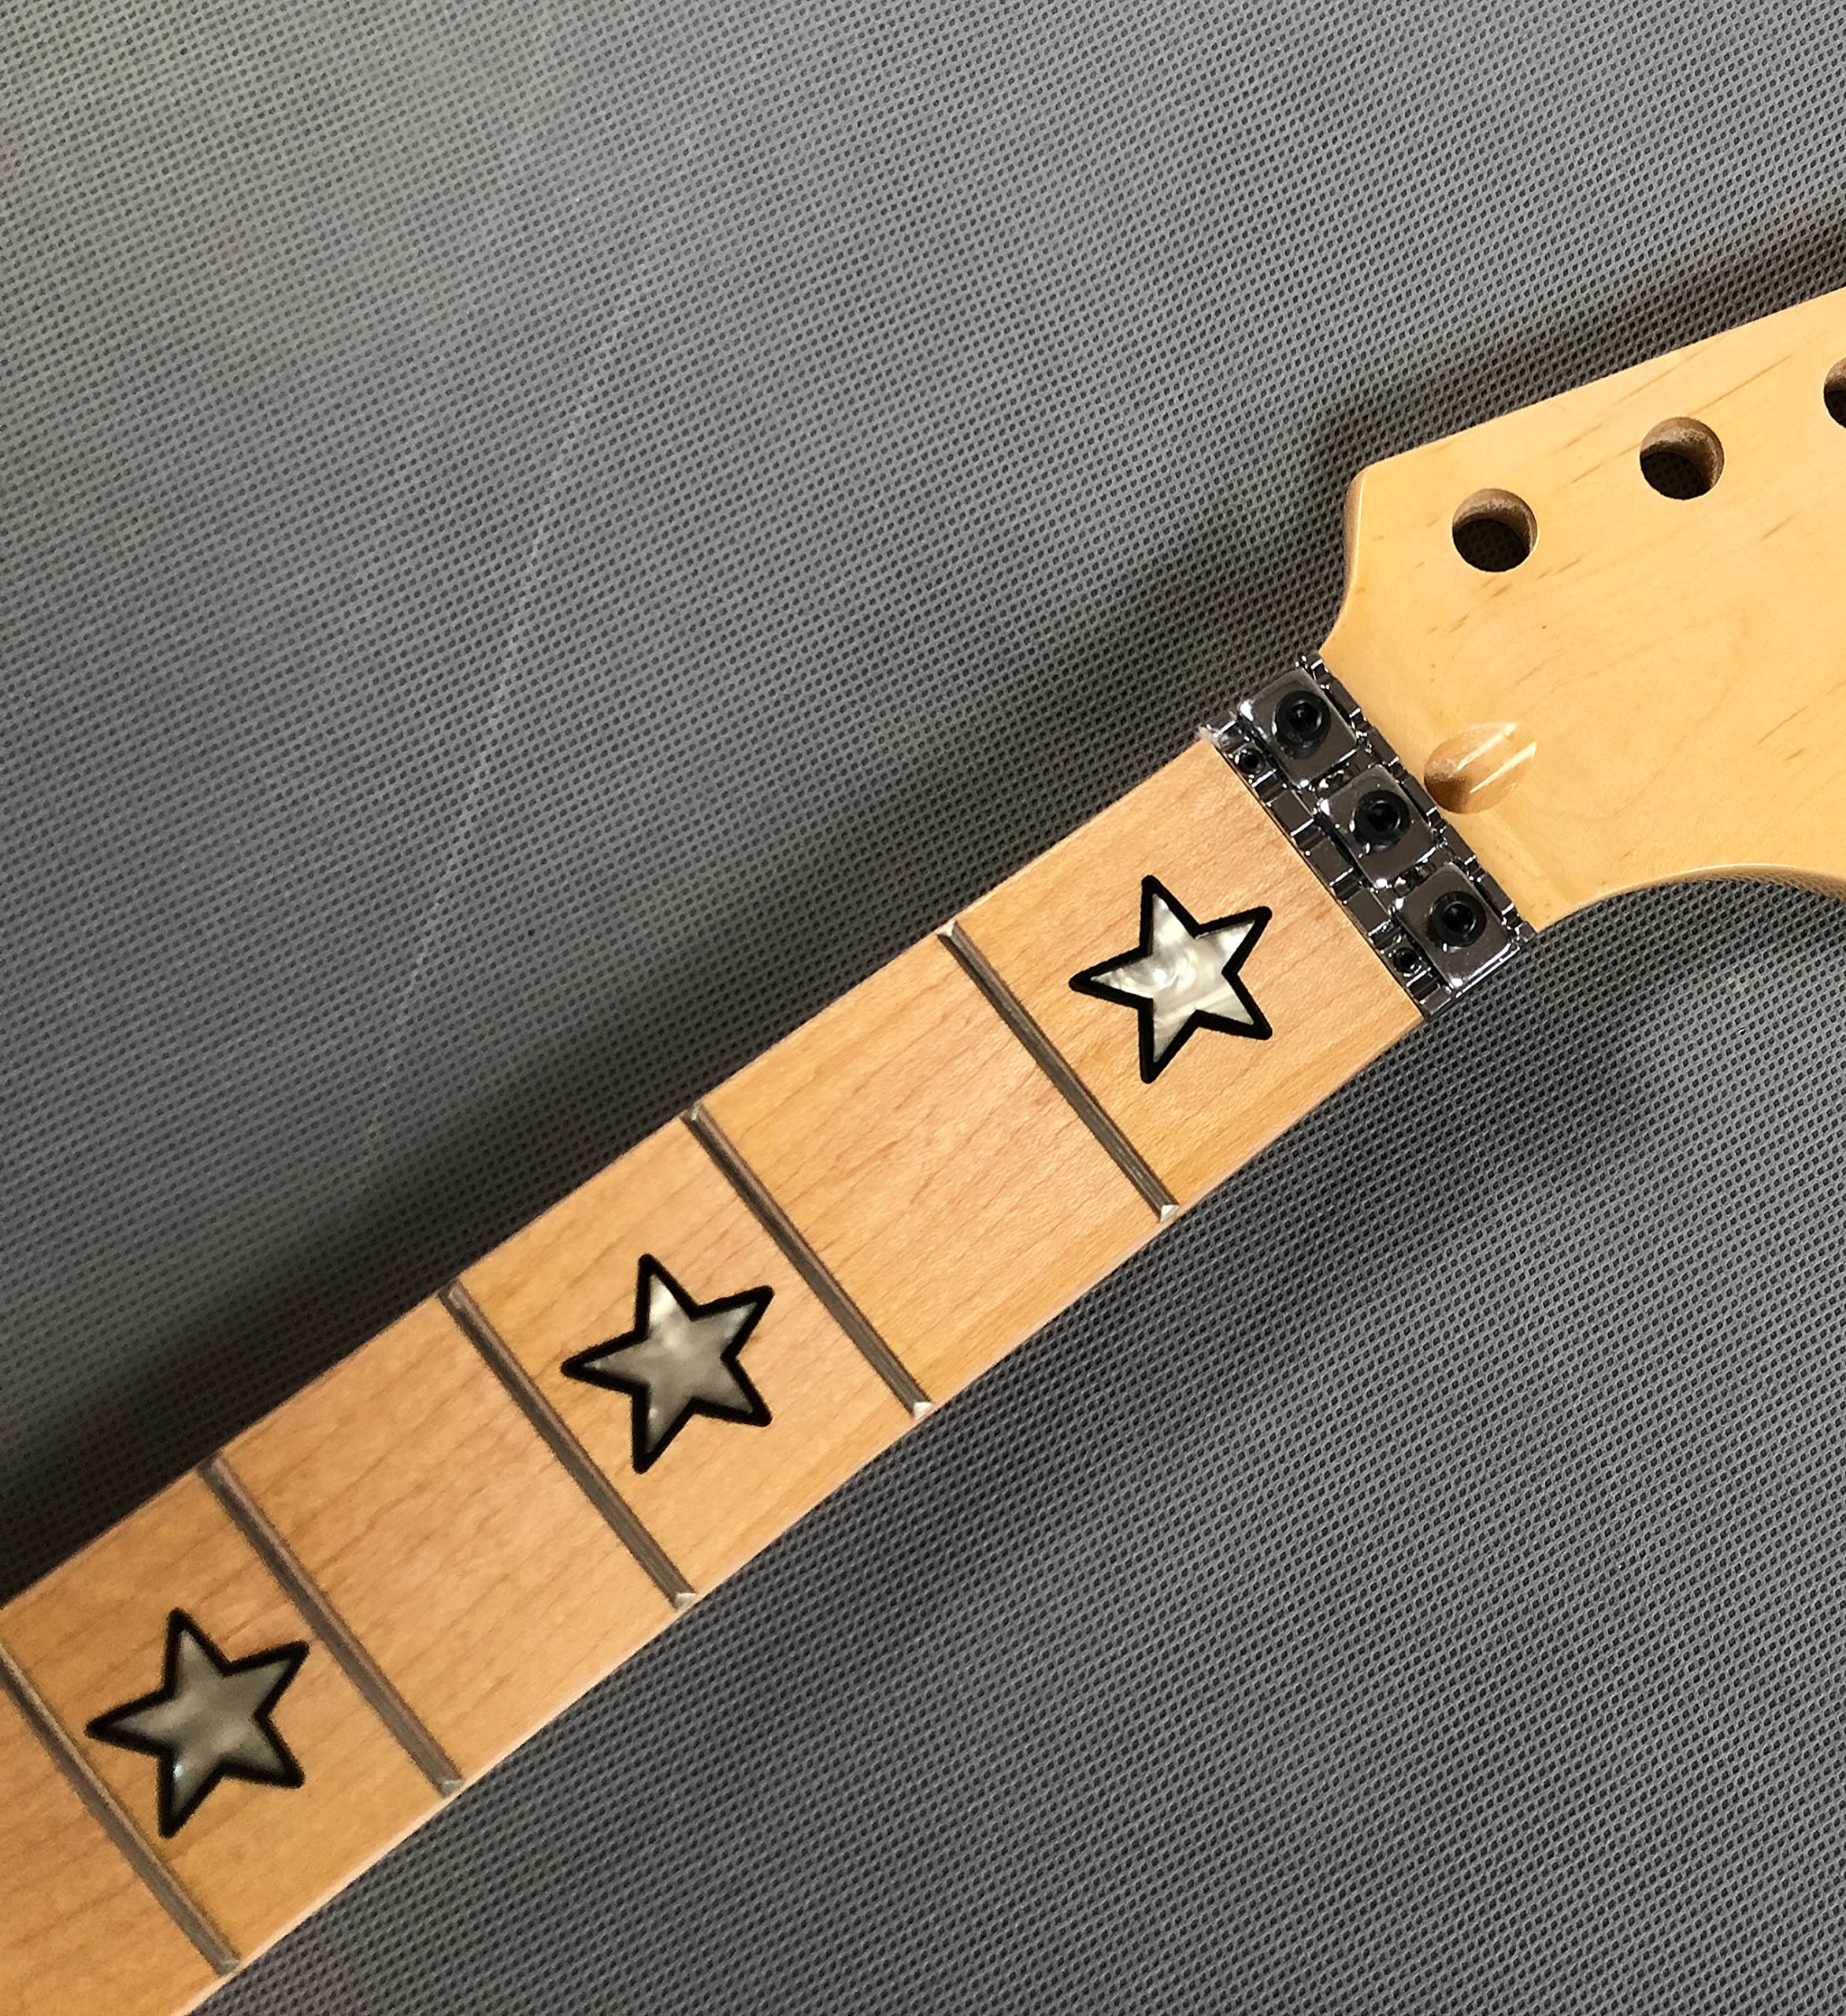 Gitarrenhals aus Ahorn, 24 Bünde, 64,8 cm, Griffbrett aus Ahornholz, mit Sterneinlage, Sicherungsmutter glänzend